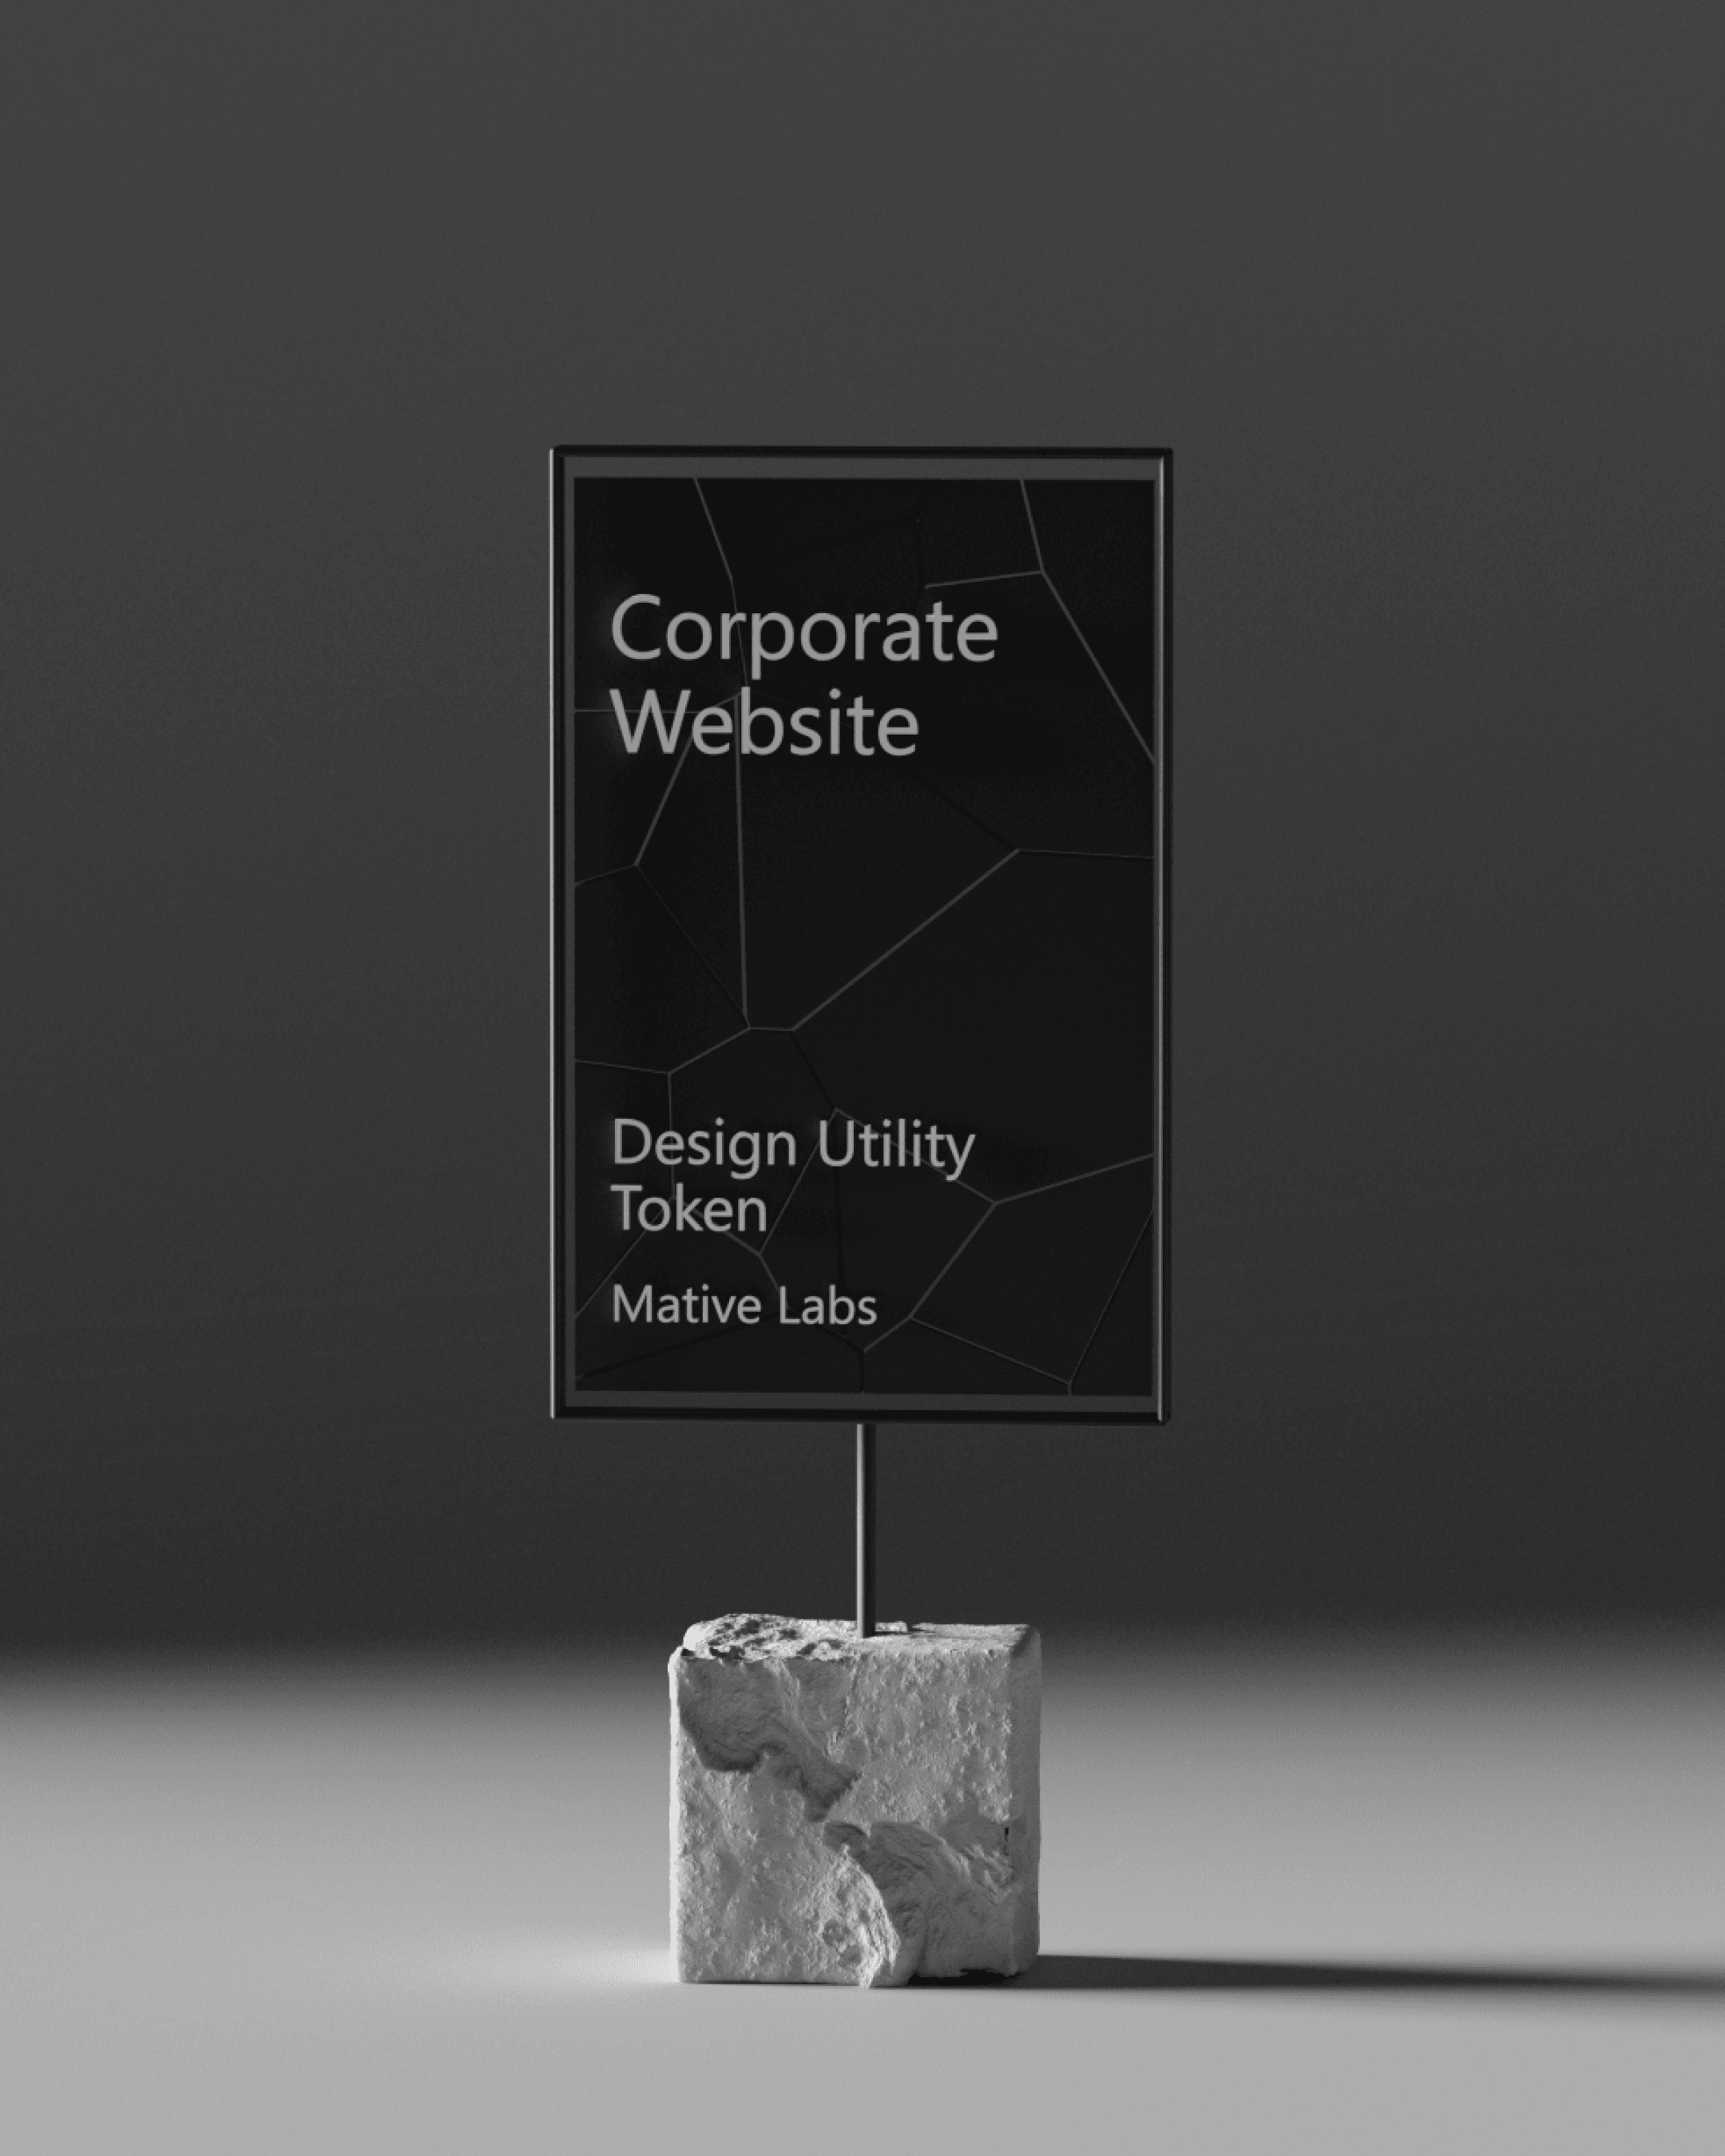 Corporate Website | Design Utility Token